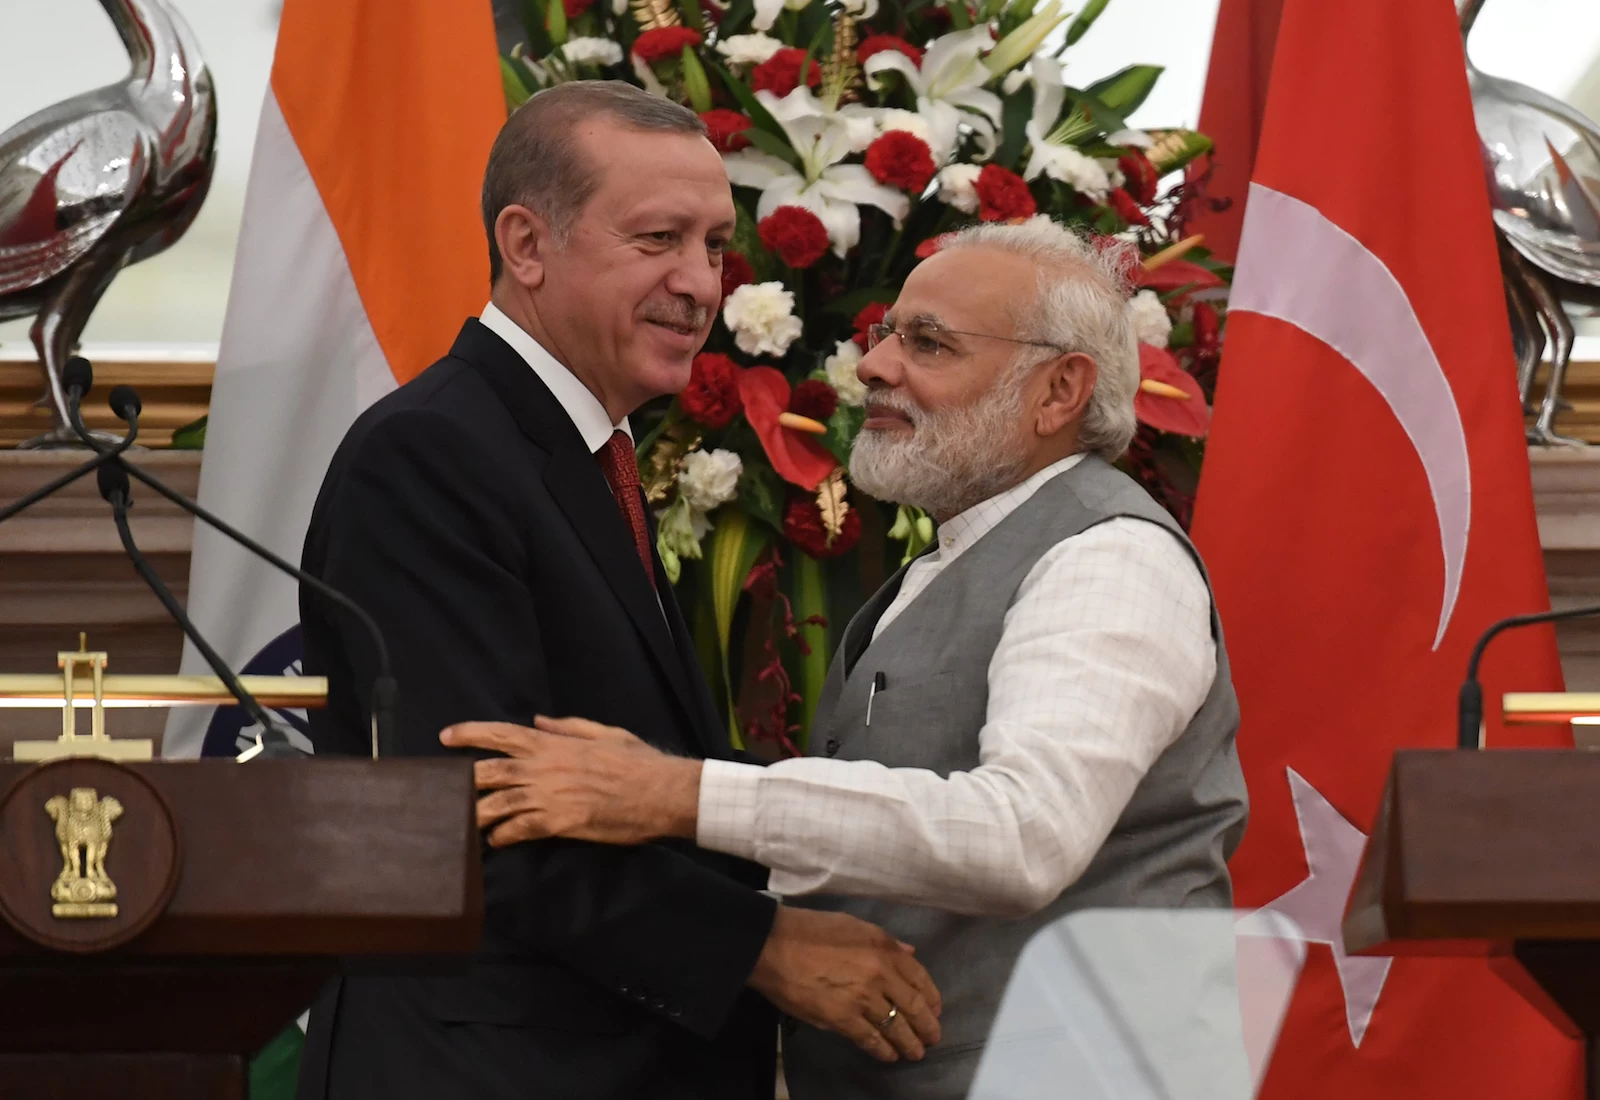 तुर्की के राष्ट्रपति की जम्मू-कश्मीर पर की गई टिप्पणियां ‘‘ पूर्णत: अस्वीकार्य’’ : भारत